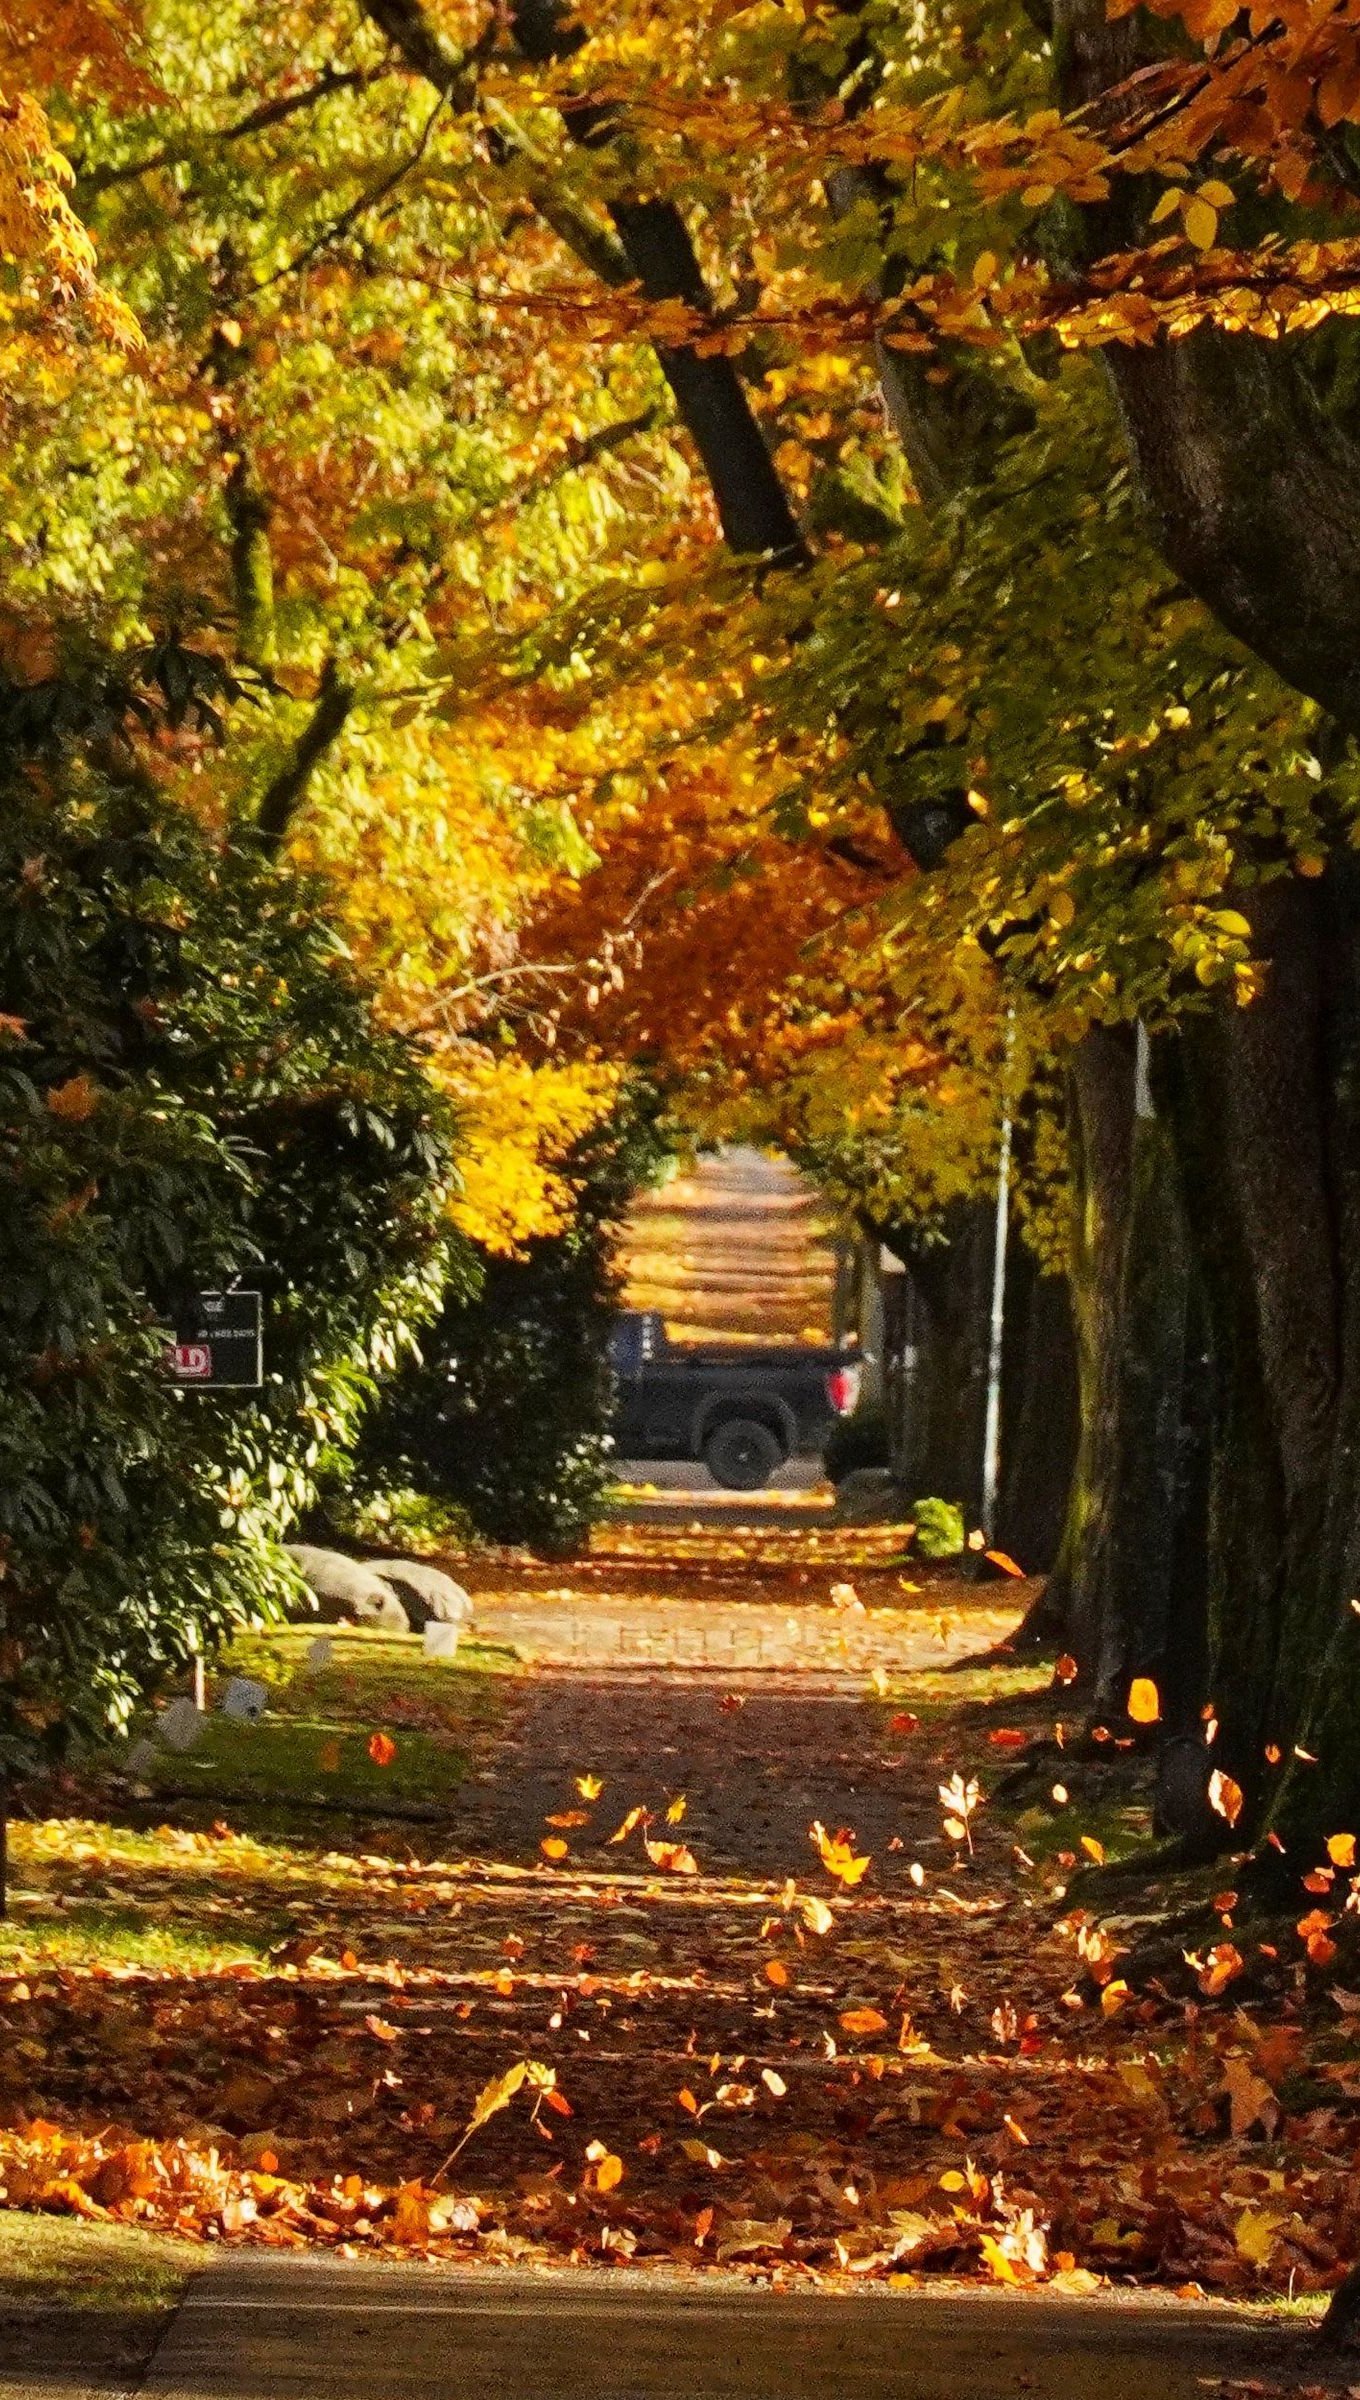 Fondos de pantalla Camino con arboles durante el otoño Vertical